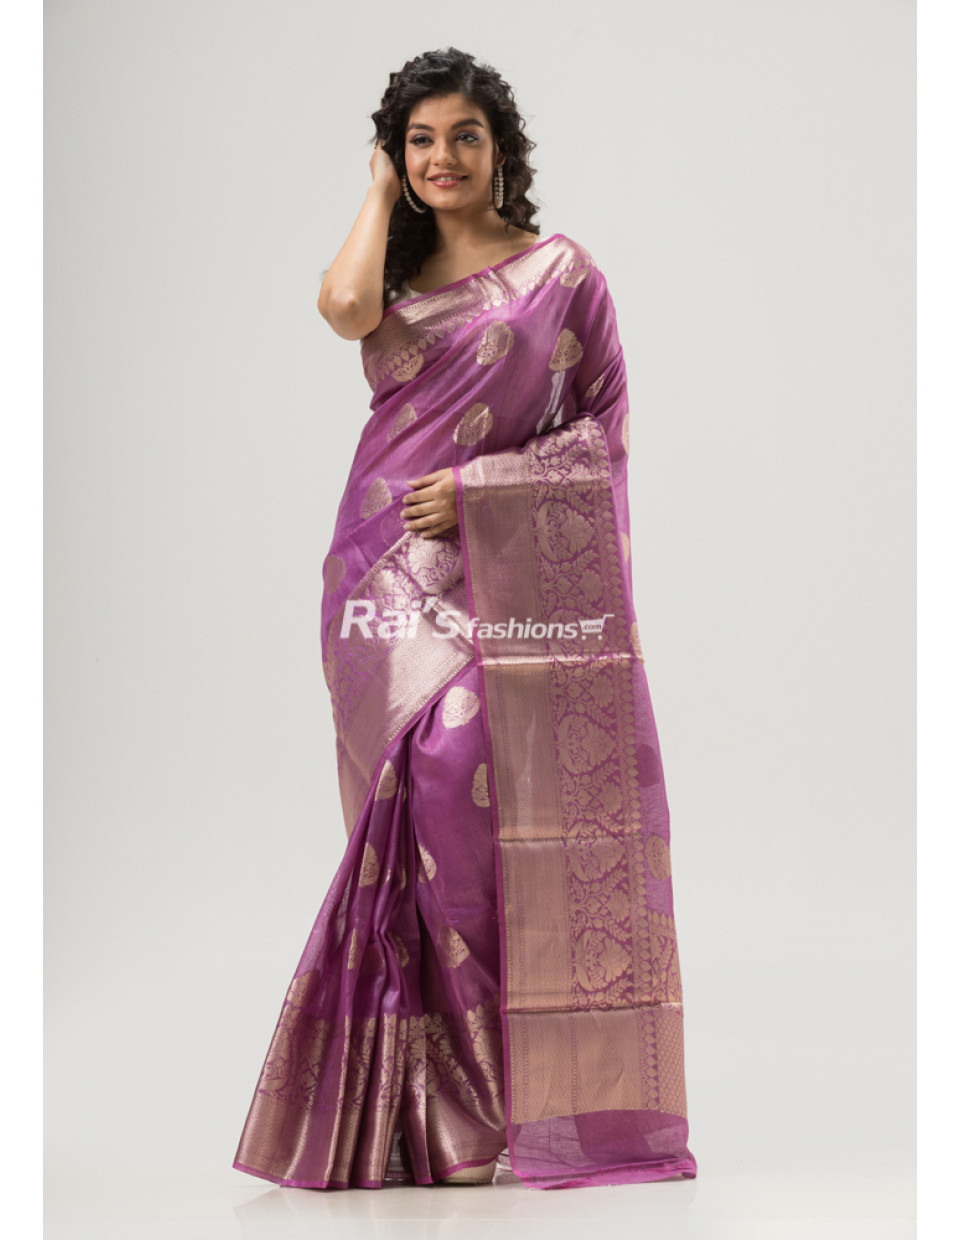 All Over Banarasi Butta Weaving Work Design Silk Linen Saree (KR1614) 